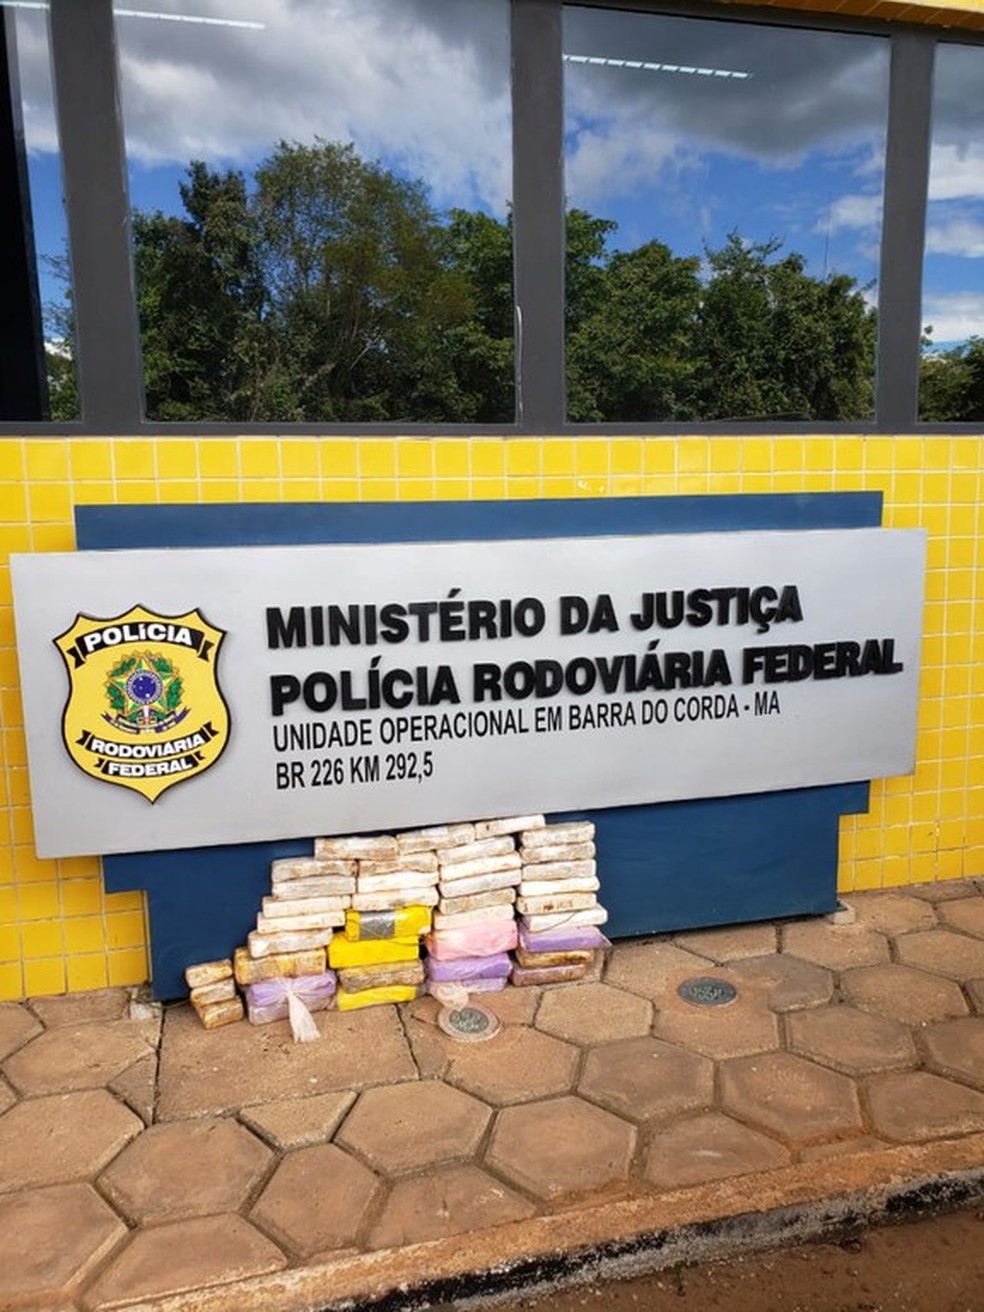 Polícia Rodoviária Federal apreende 26 kg de cocaína em Barra do Corda (MA) — Foto: Divulgação/Polícia Rodoviária Federal